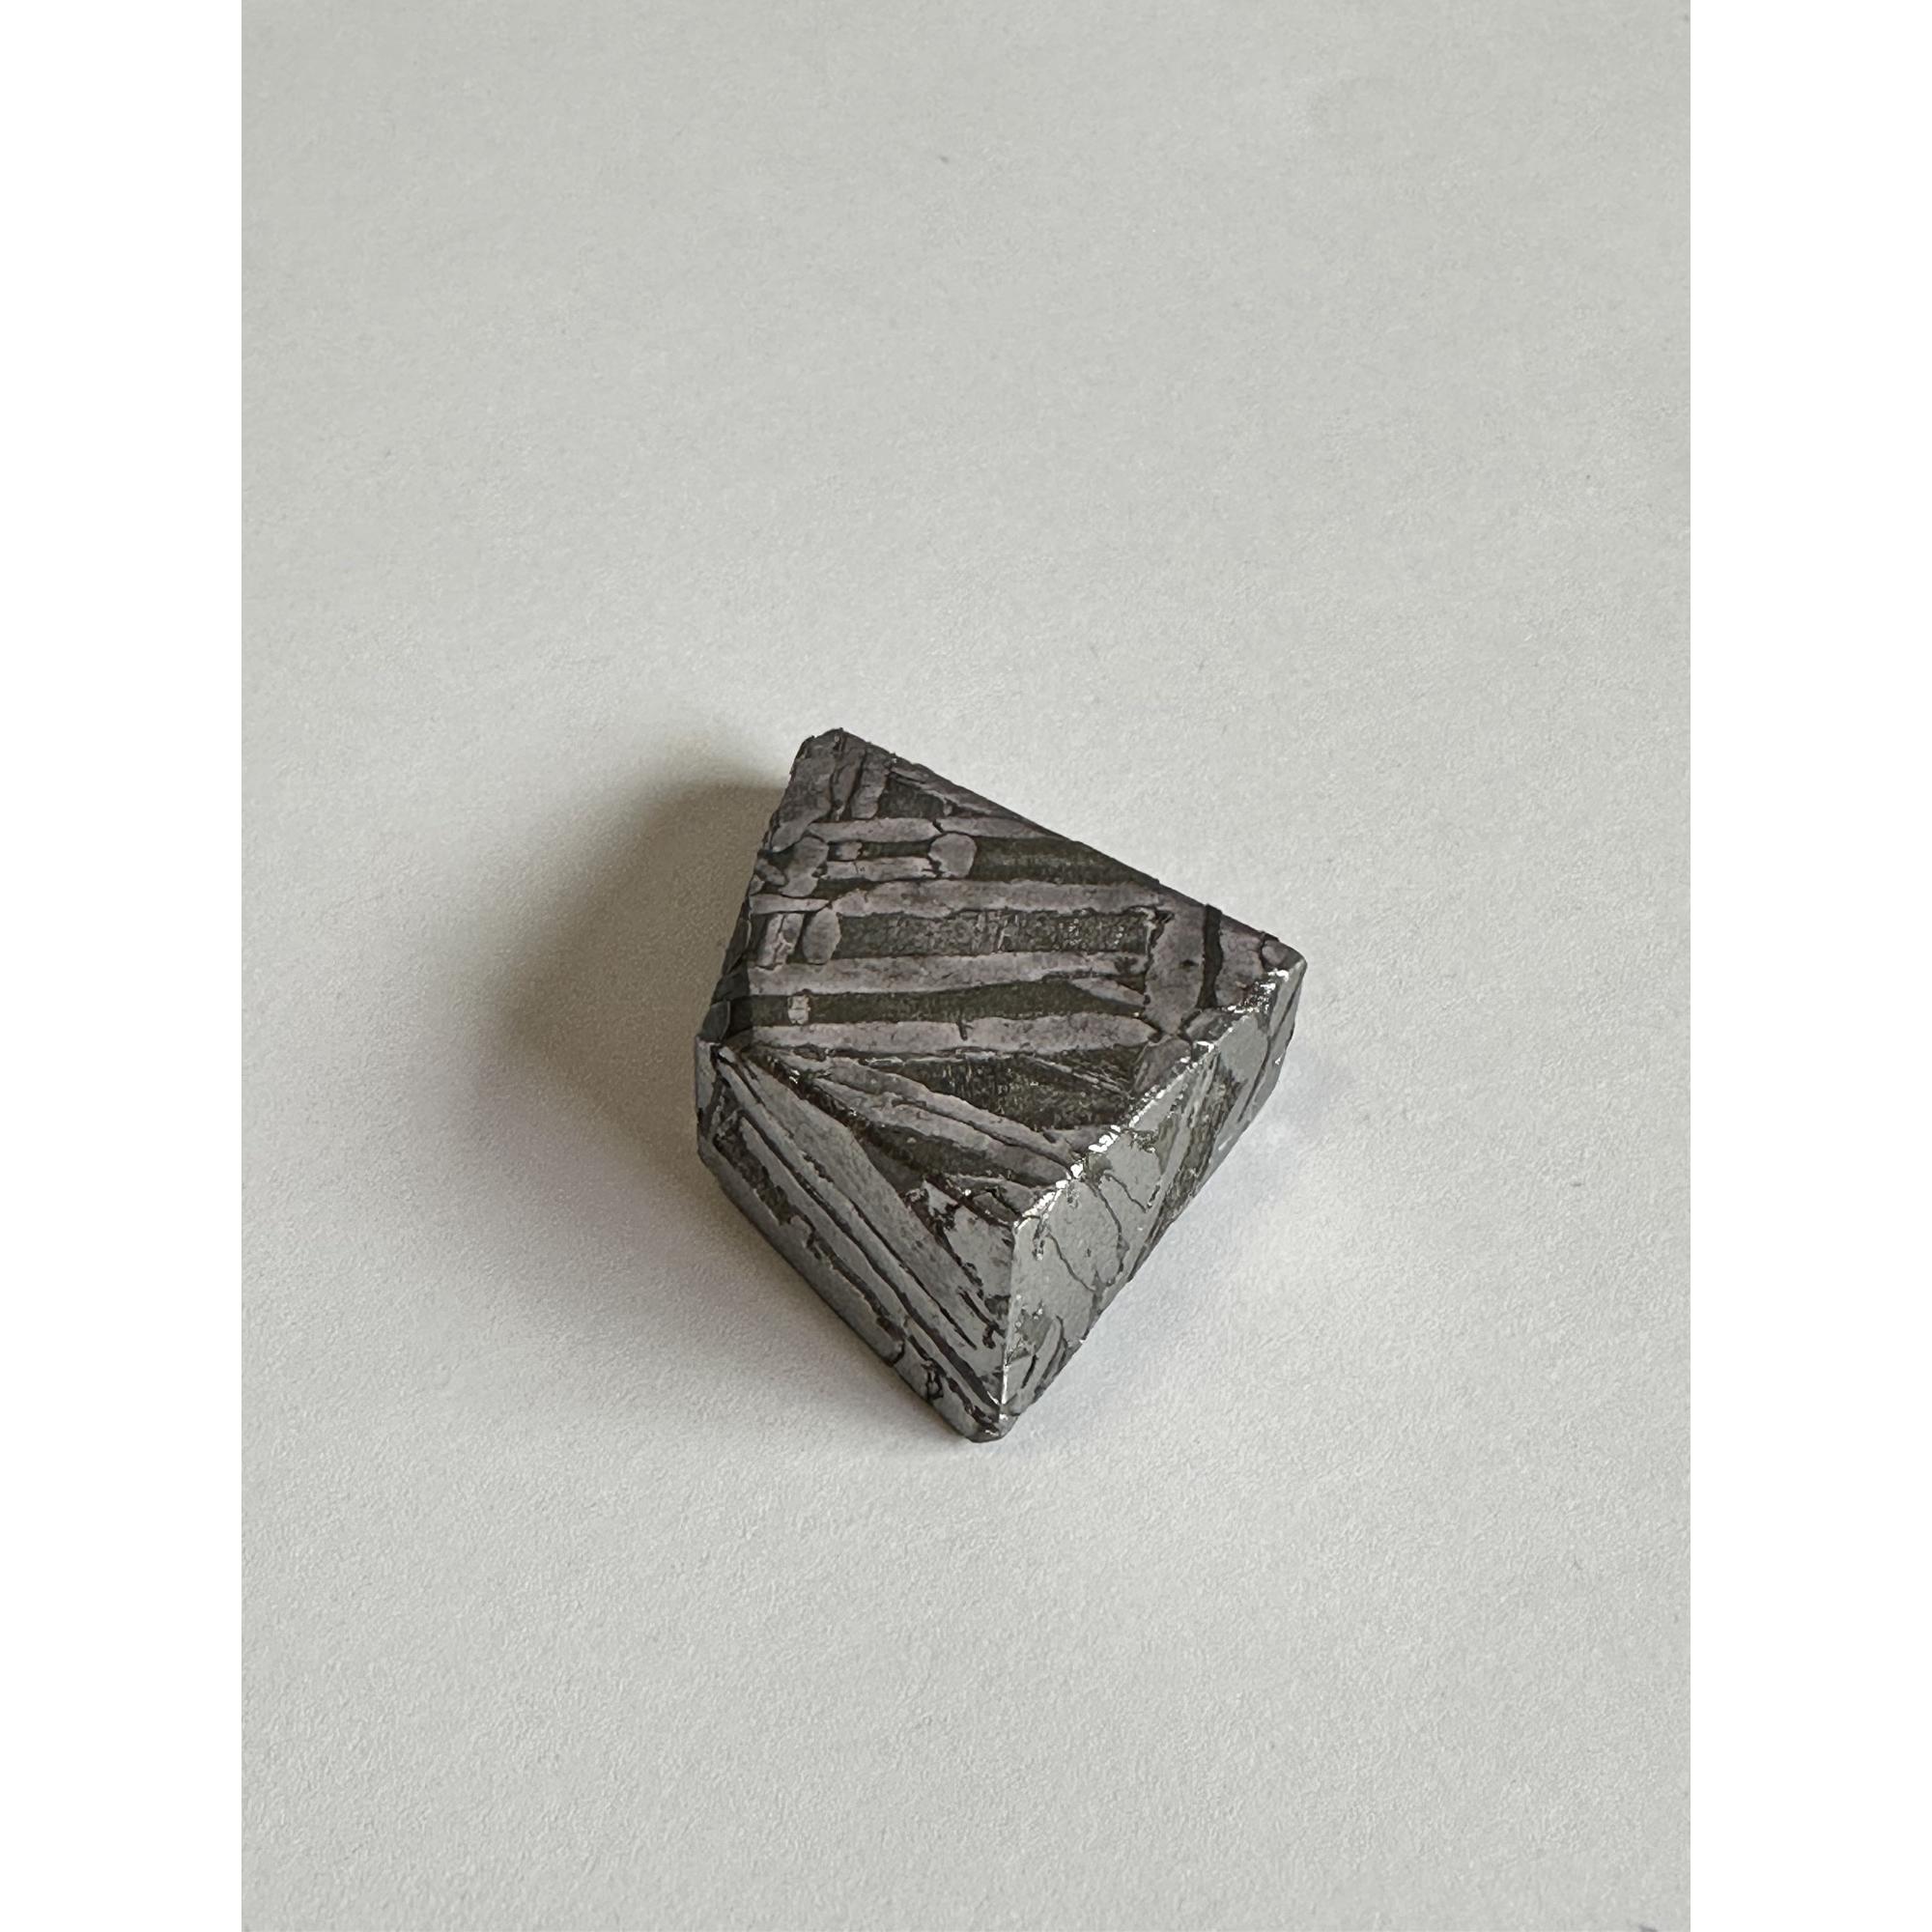 Seymchan meteorite, 35.3g, Russian Prehistoric Online